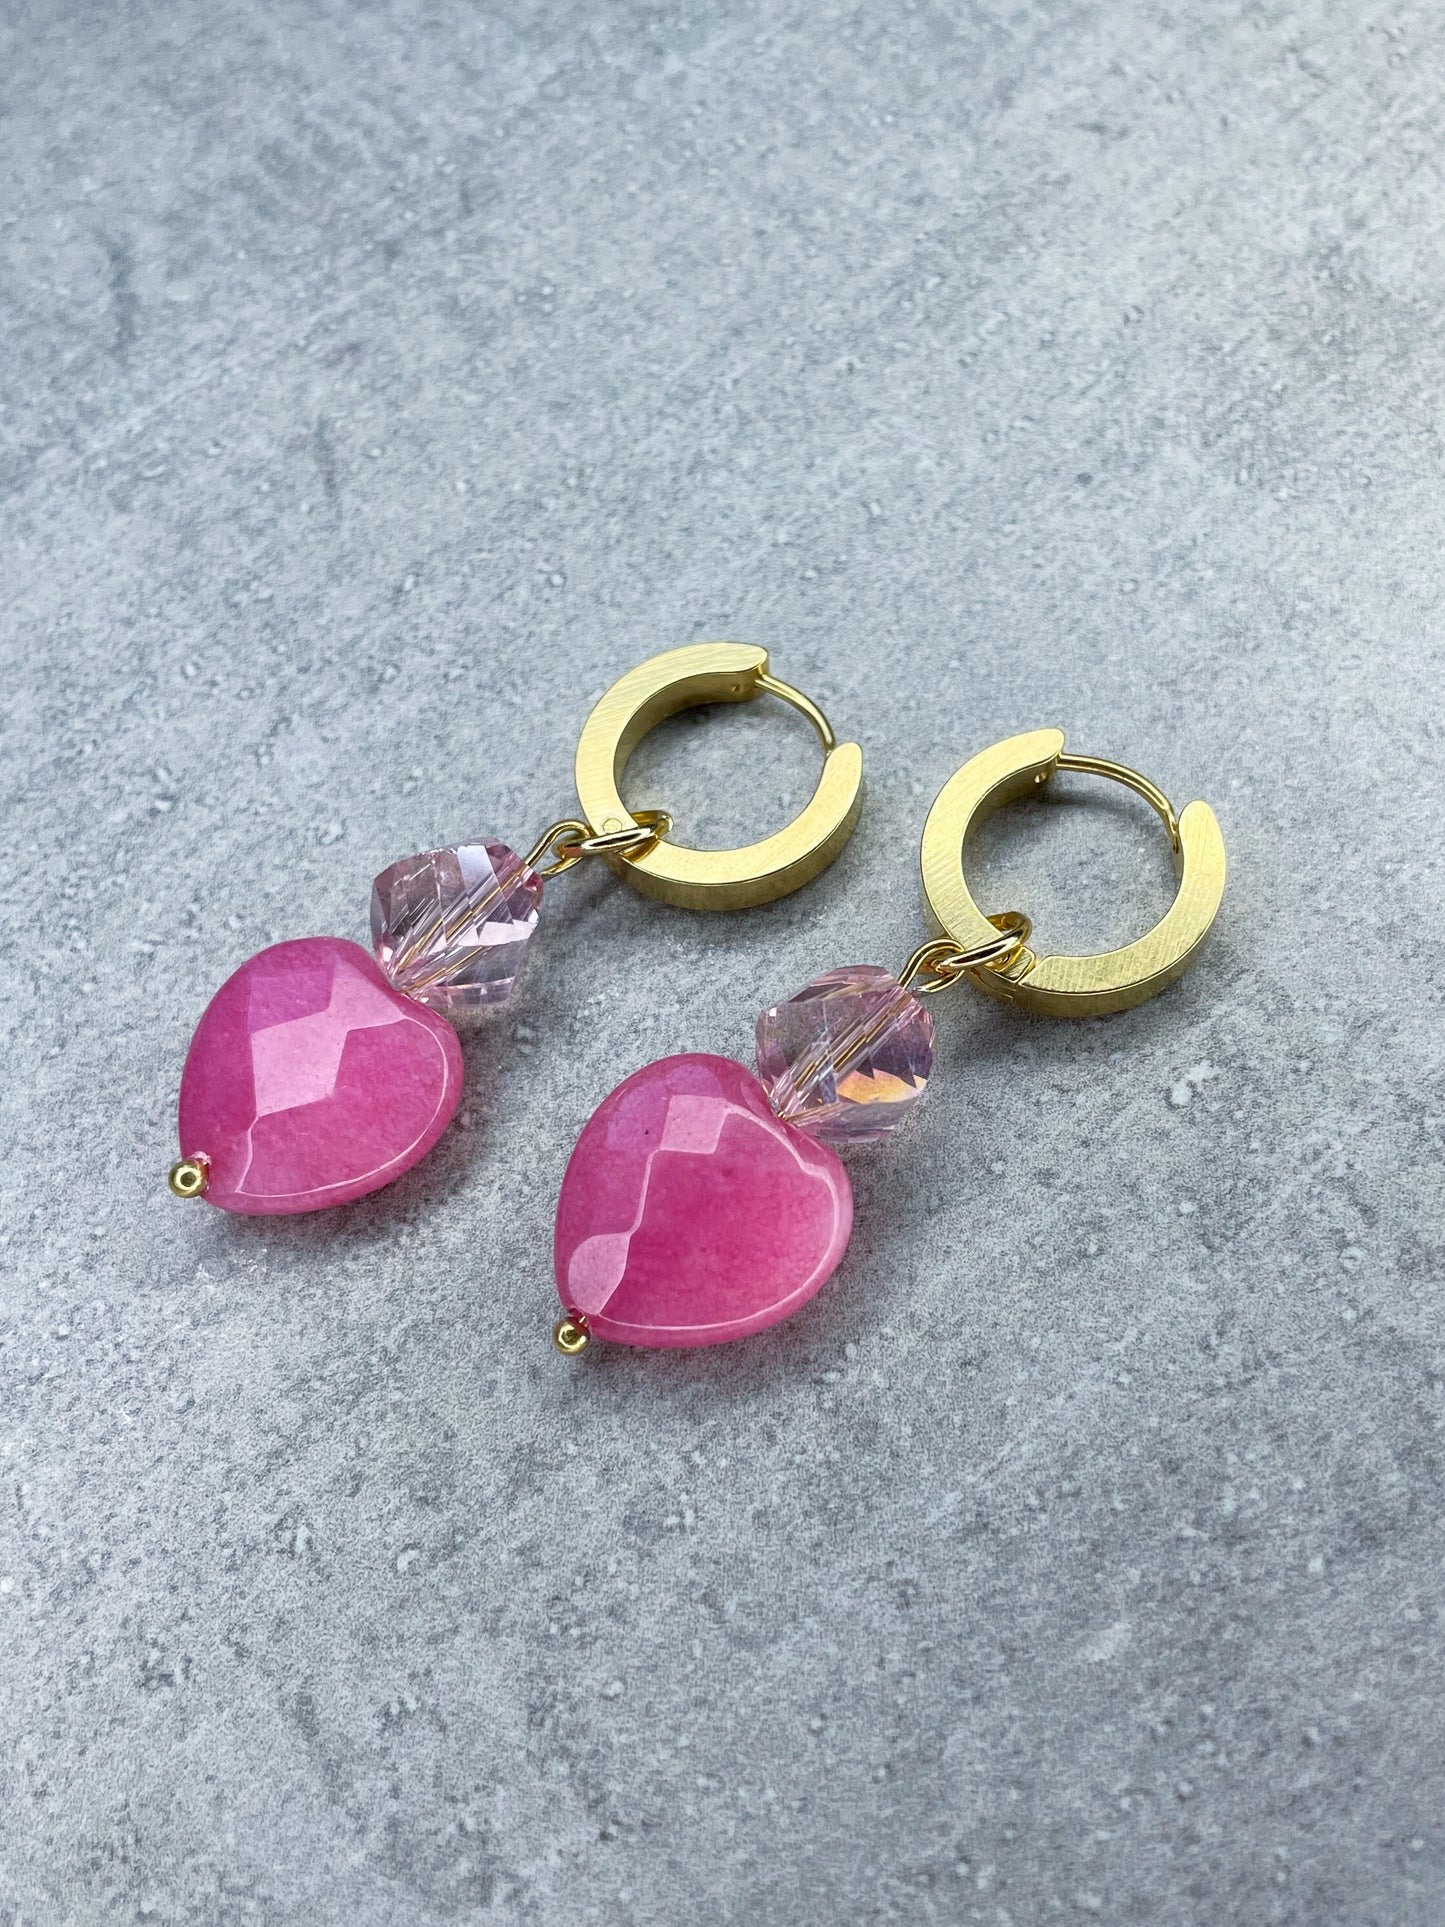 Earrings "Berry Hearts" - 1 pair